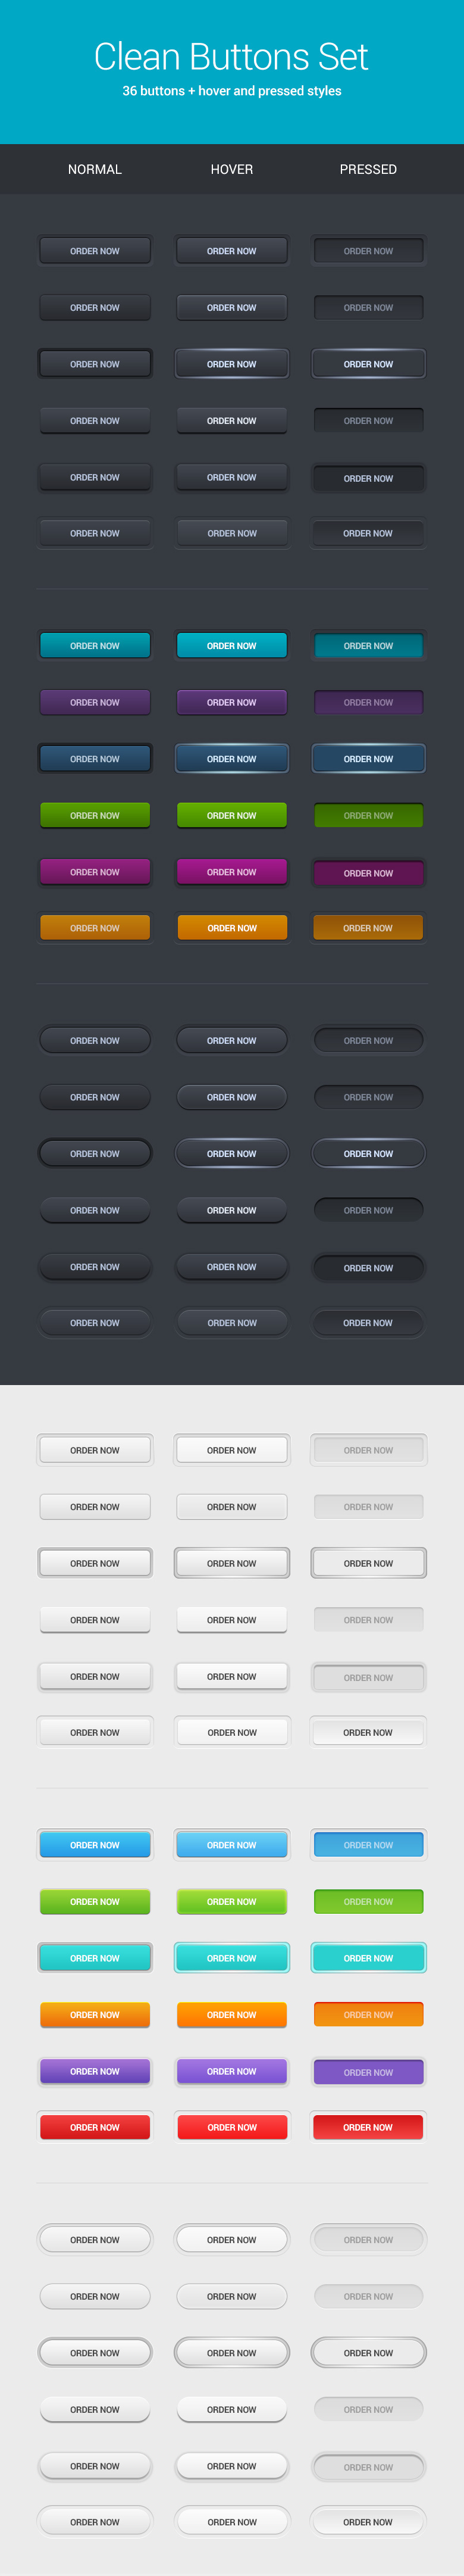 Webdesign buttons buttons set clean UI user interface button modern